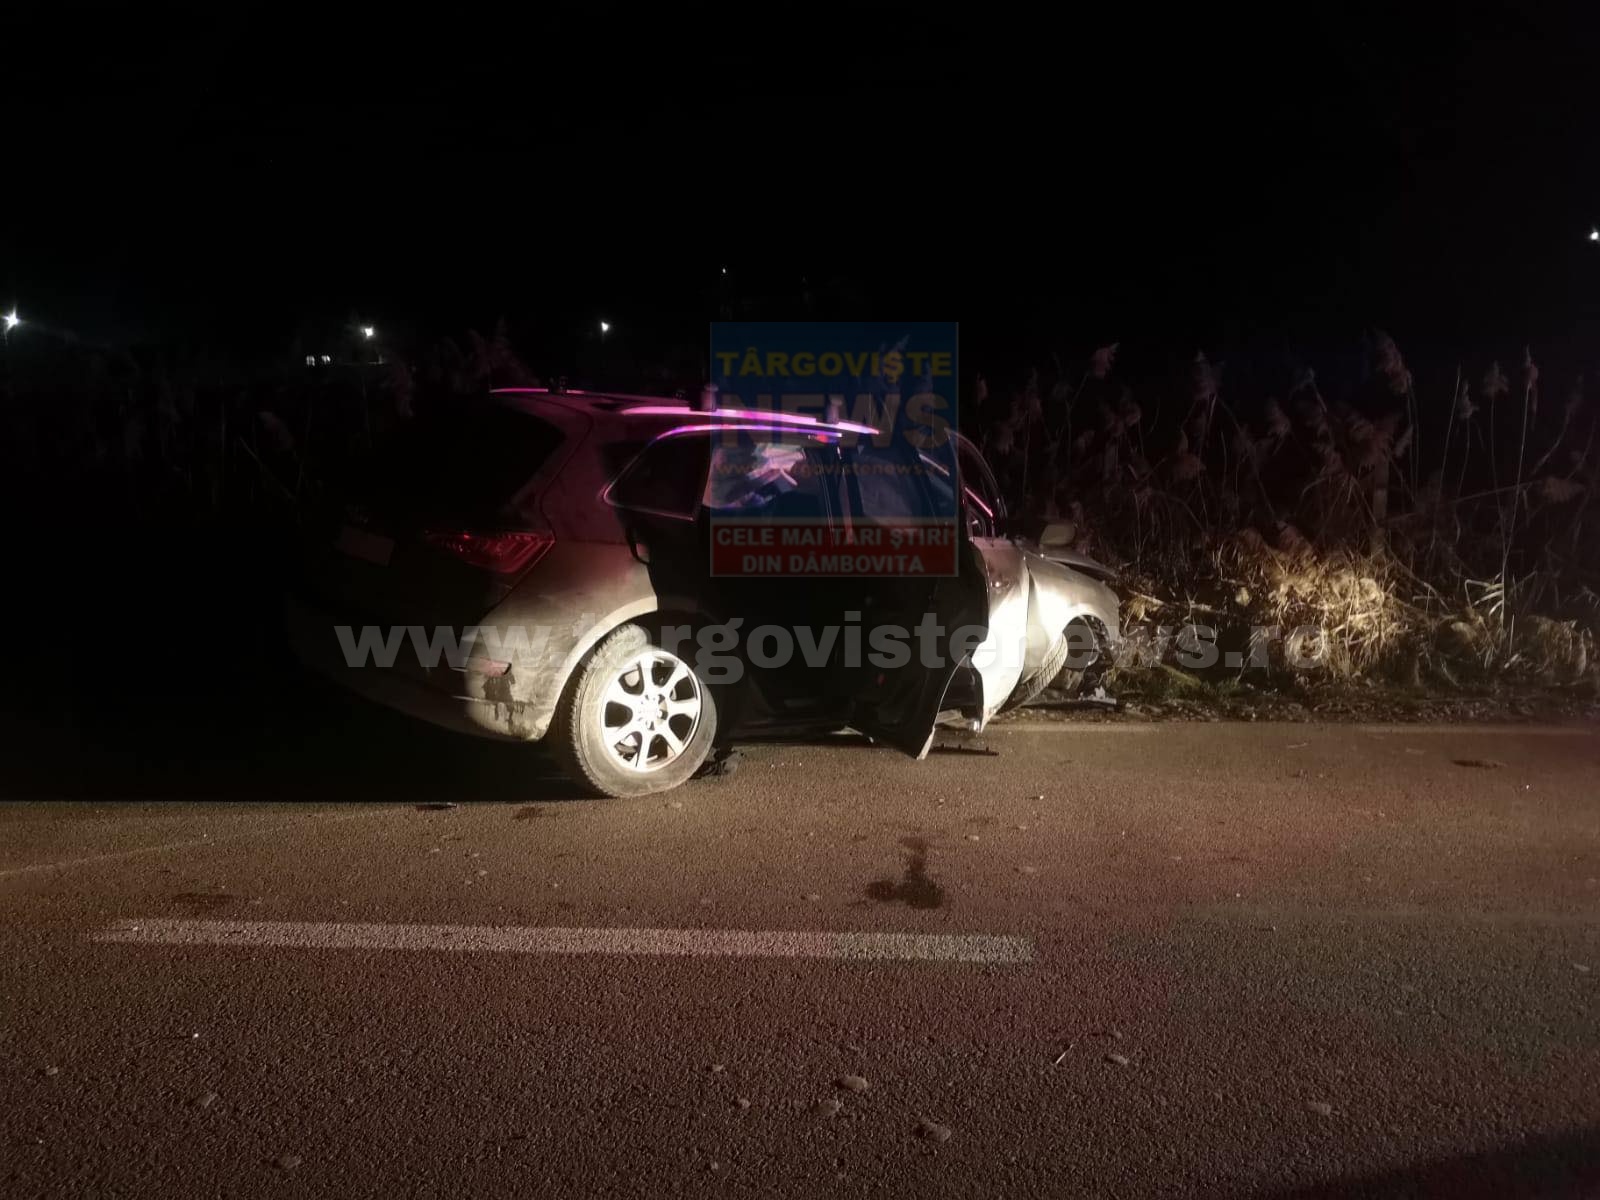 FOTO/VIDEO: Accident grav la Pietrari. Două femei au fost rănite şi transportate la spital